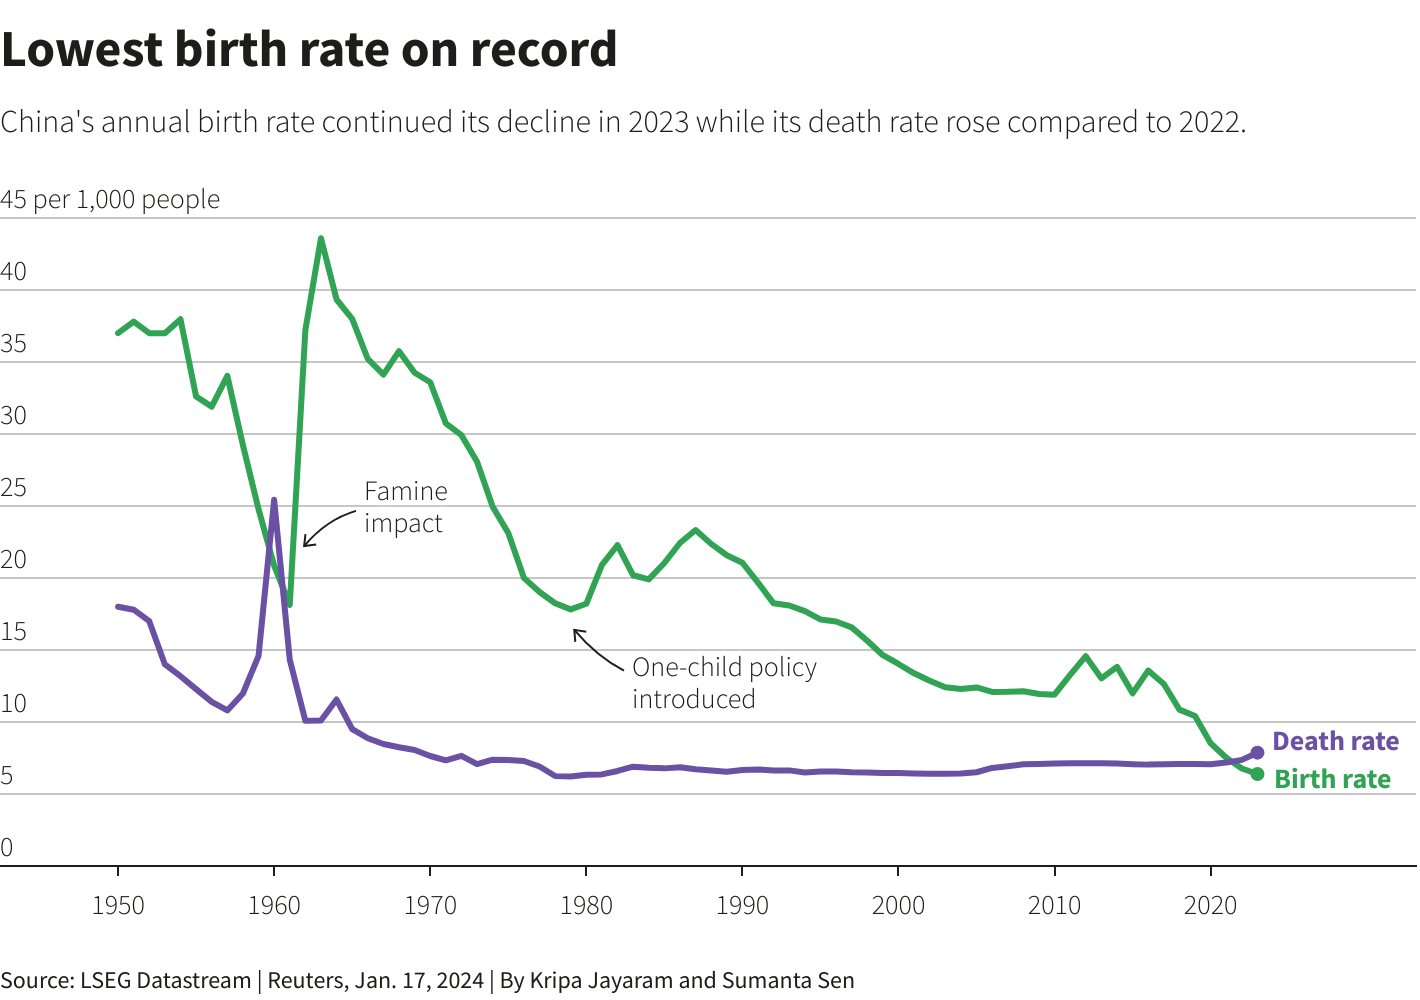 ¿Es la baja en la tasa de natalidad una buena noticia?